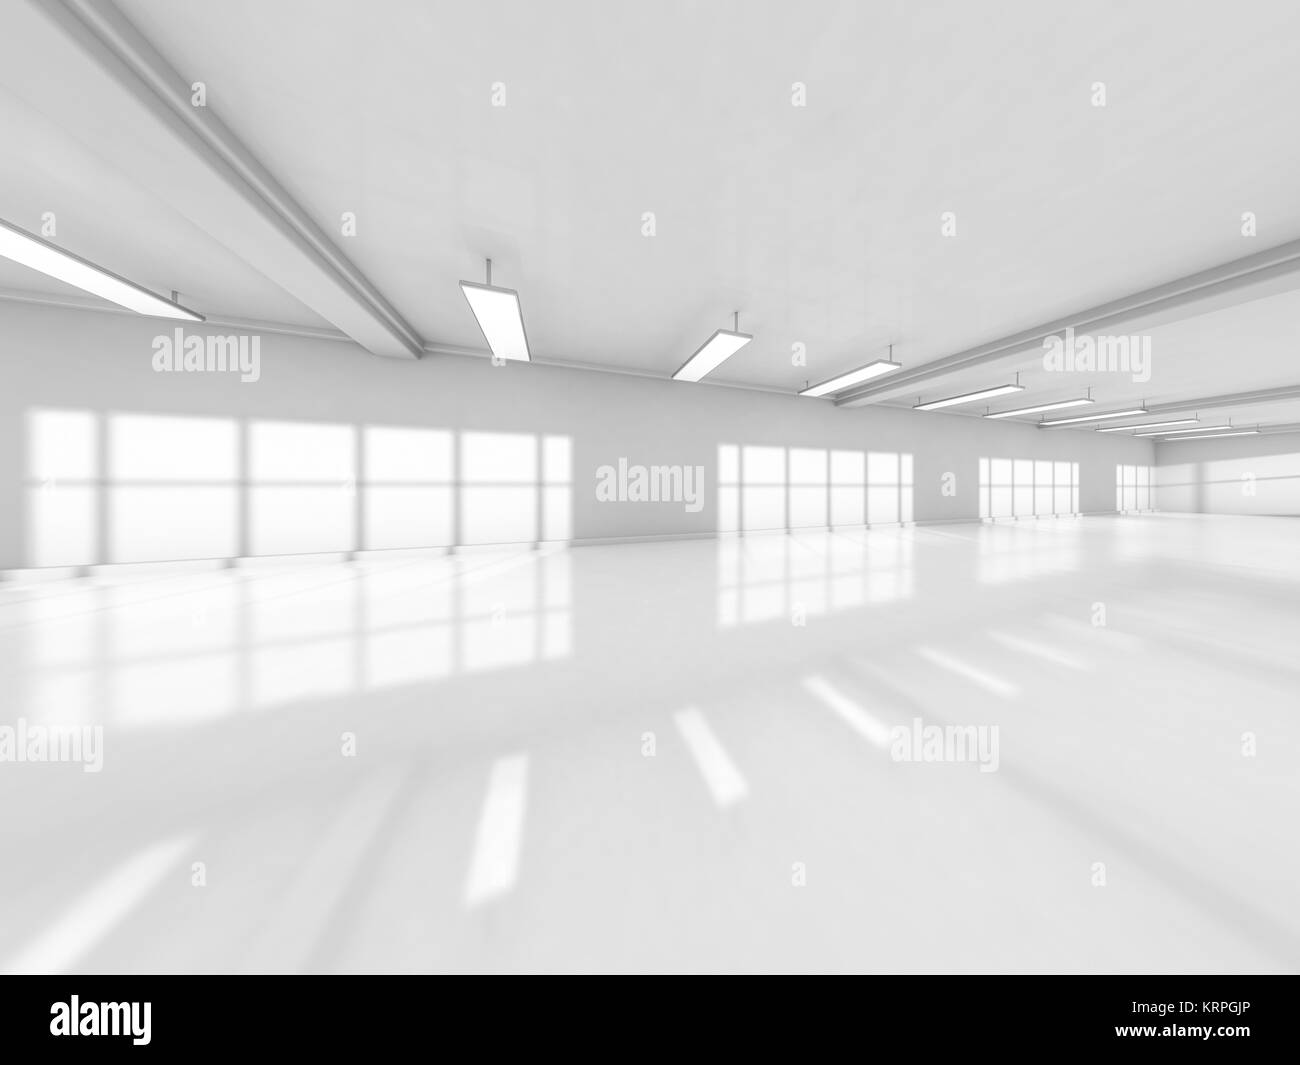 Résumé L'architecture moderne, l'arrière-plan blanc vide de l'espace ouvert de l'intérieur. Le rendu 3D Banque D'Images